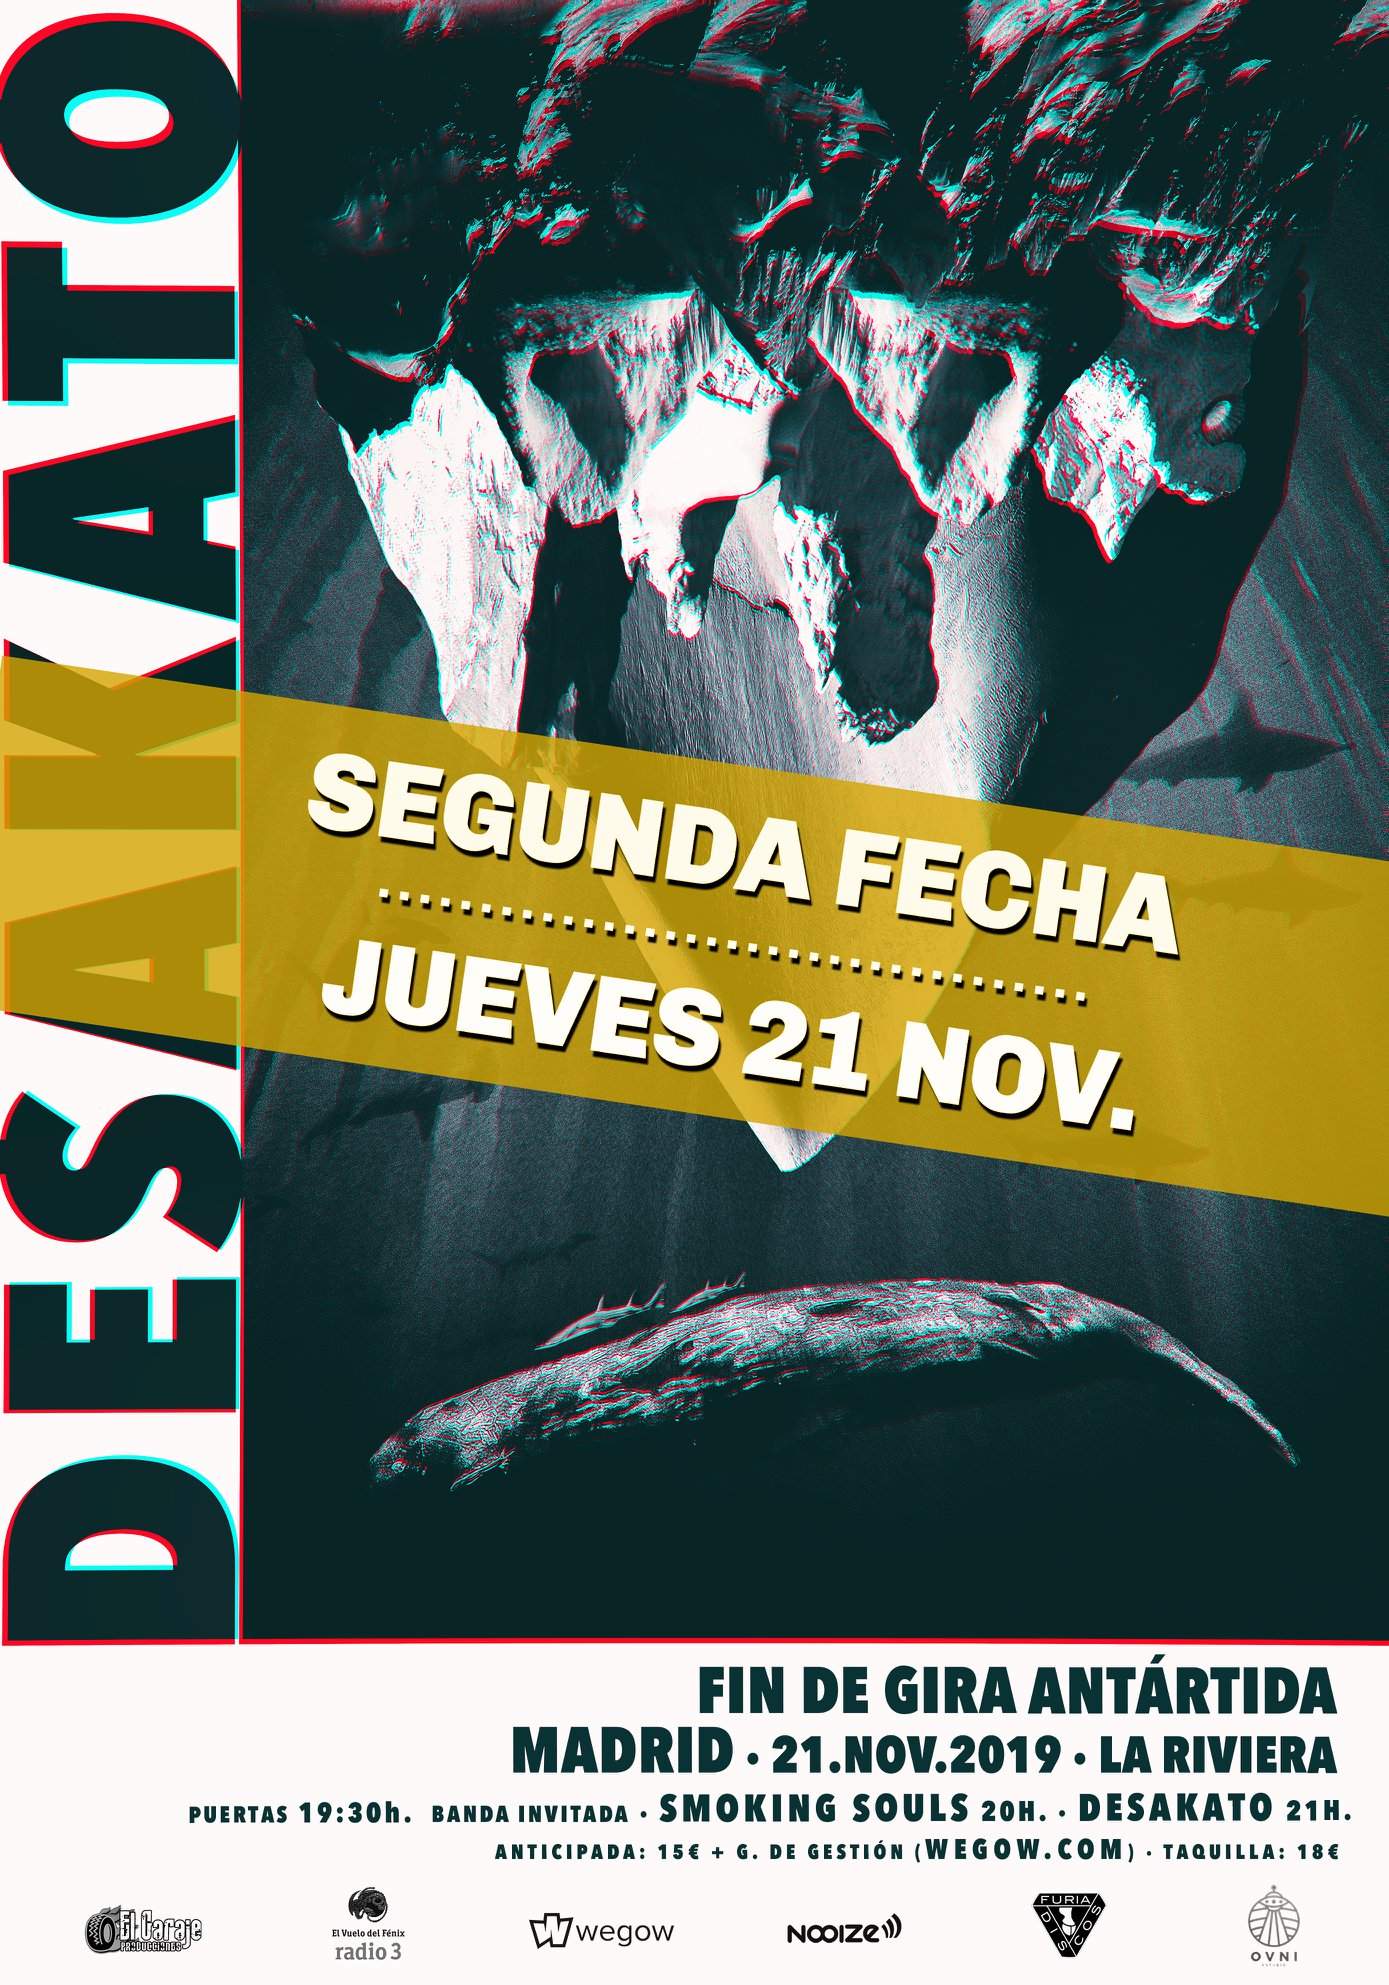 DESAKATO confirma una segunda fecha en MADRID el 21 de noviembre